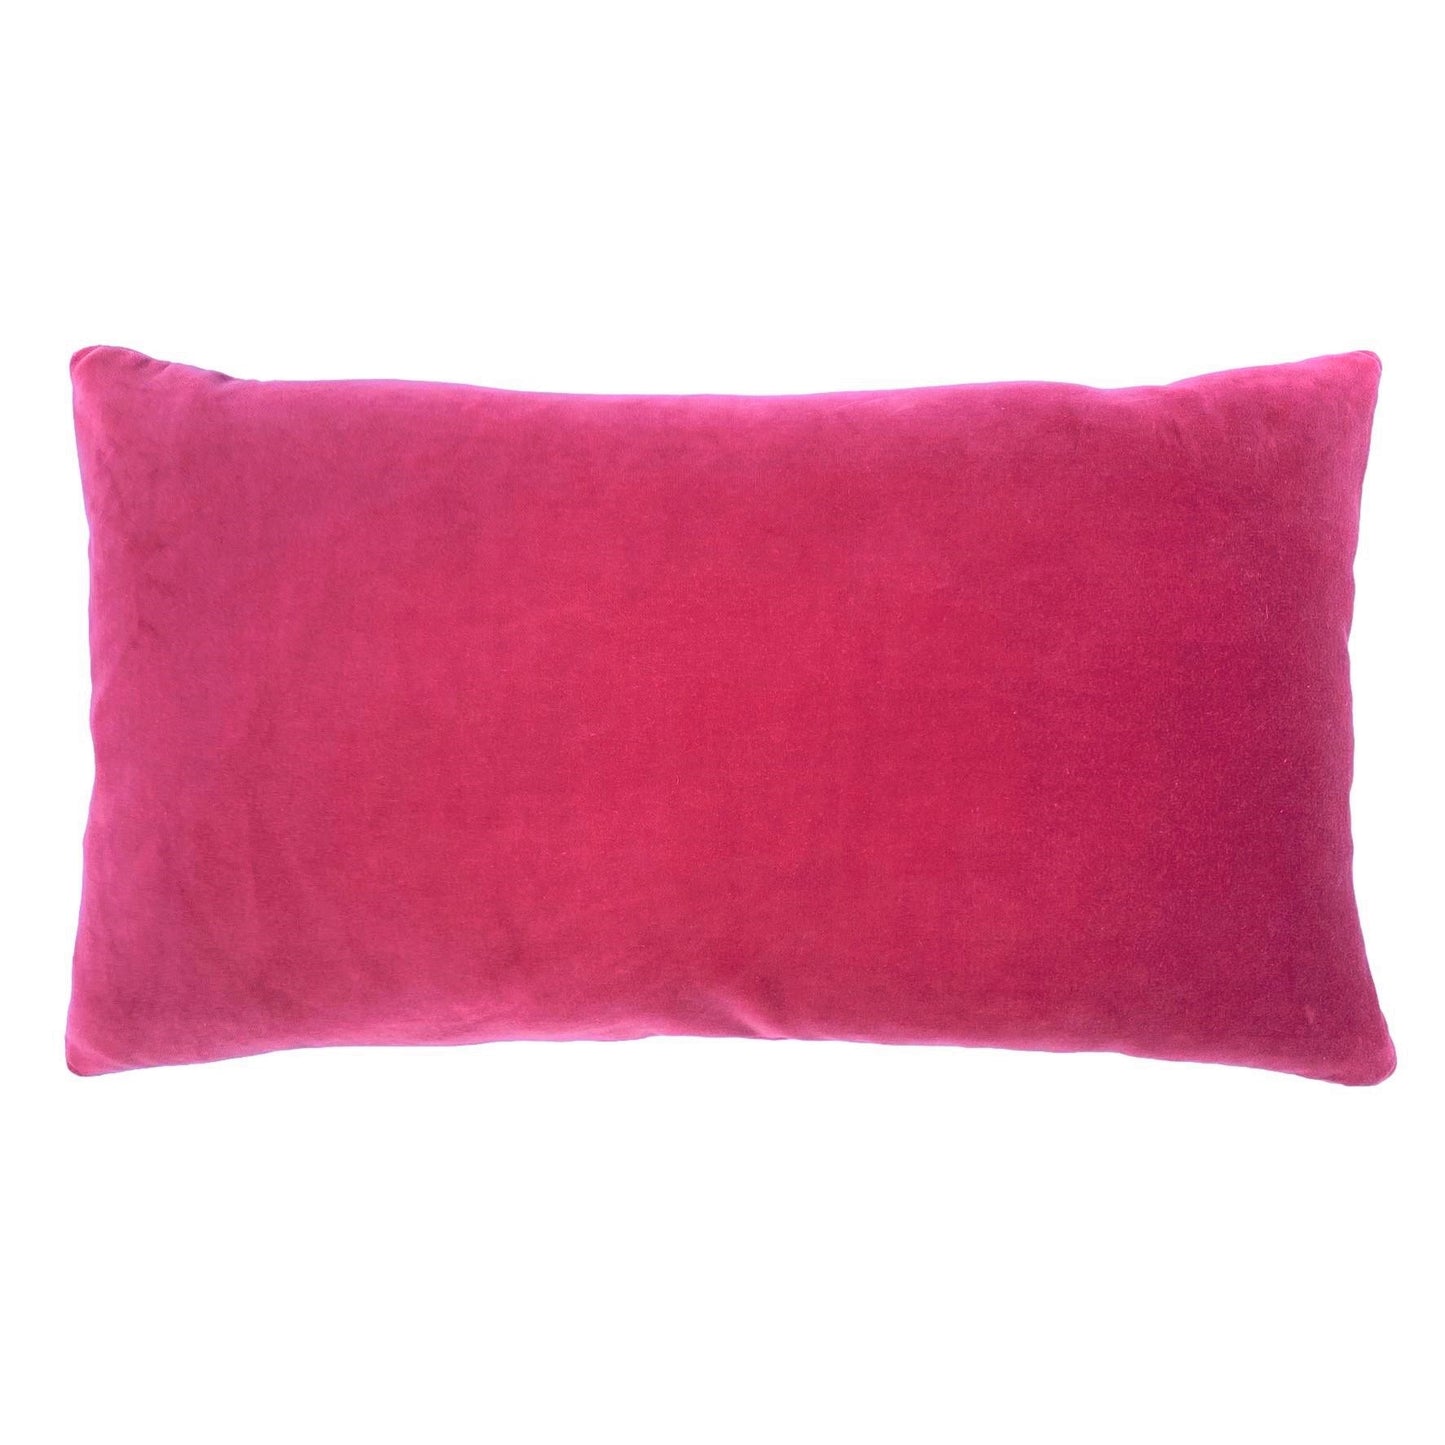 pink velvet cushion covers